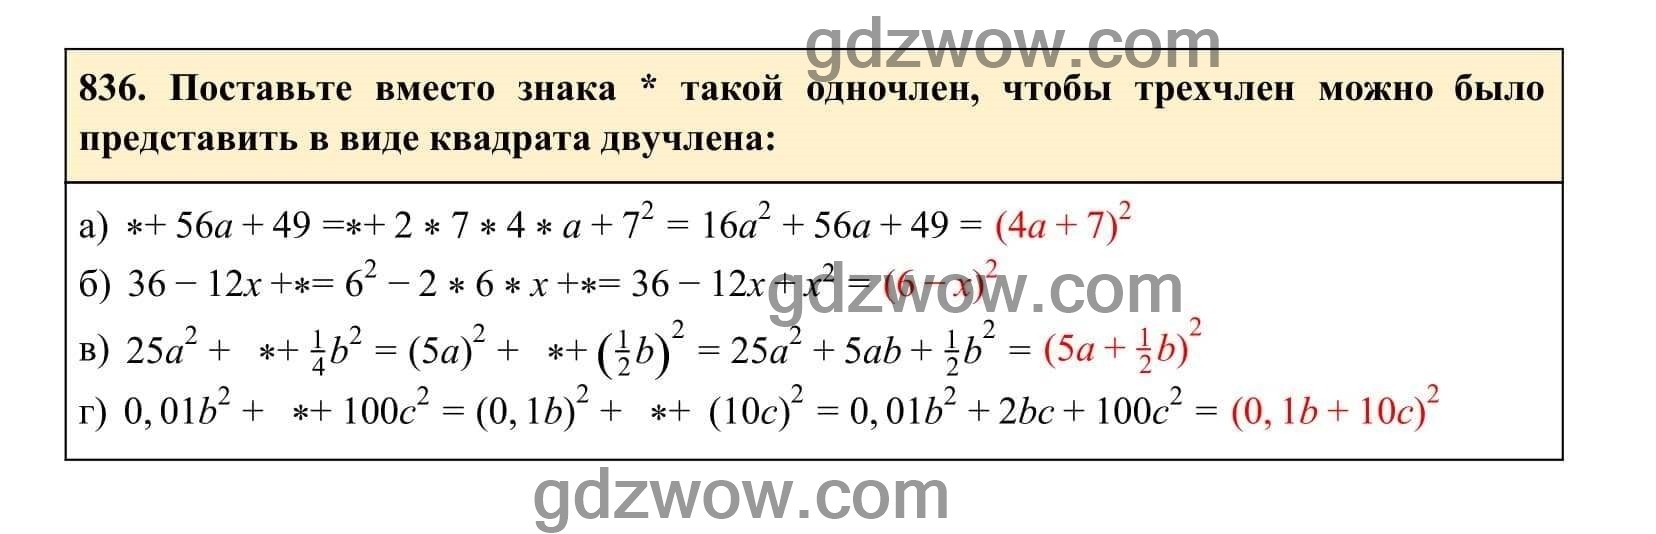 Упражнение 836 - ГДЗ по Алгебре 7 класс Учебник Макарычев (решебник) - GDZwow